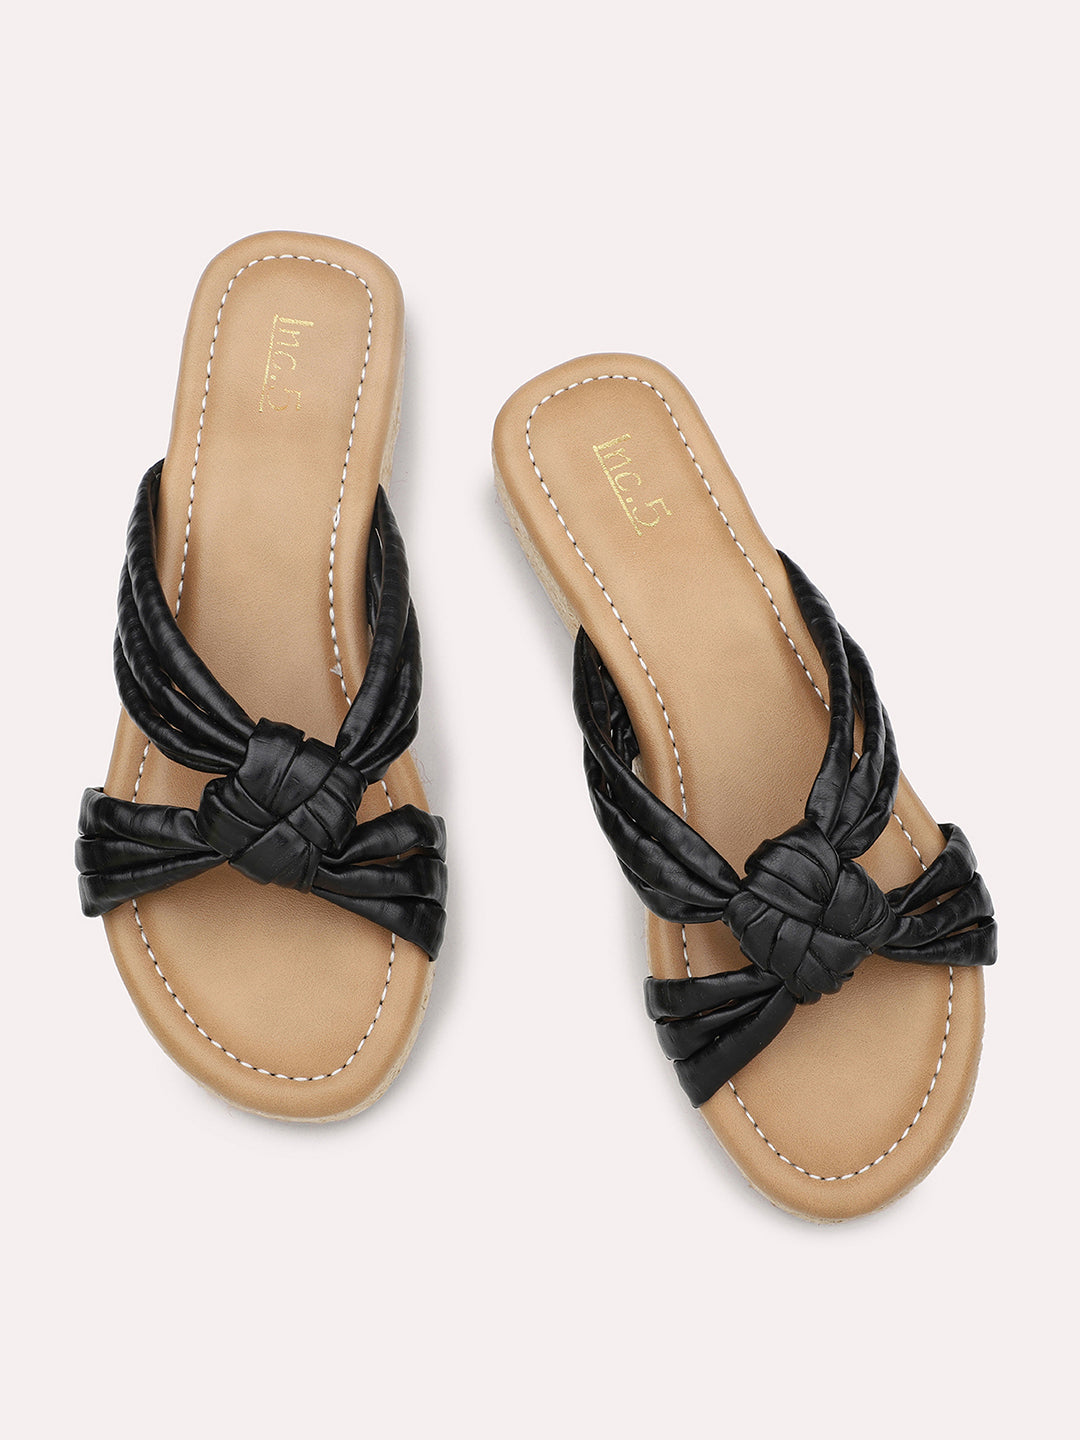 Women Black Solid Comfort Heels Sandals